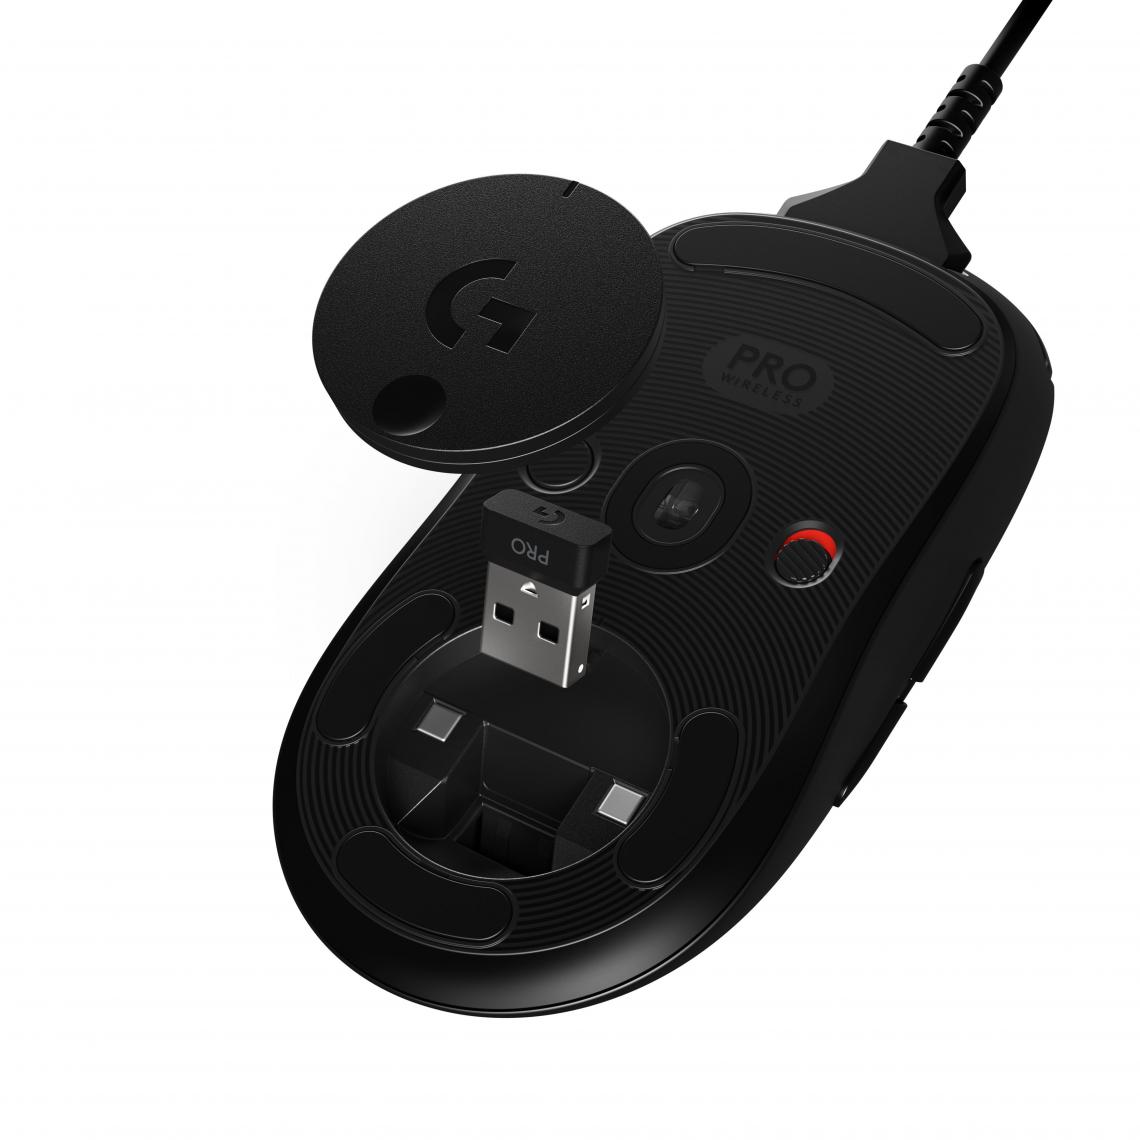 Logitech - G Gaming Pro Mouse sans fil - noir - Souris